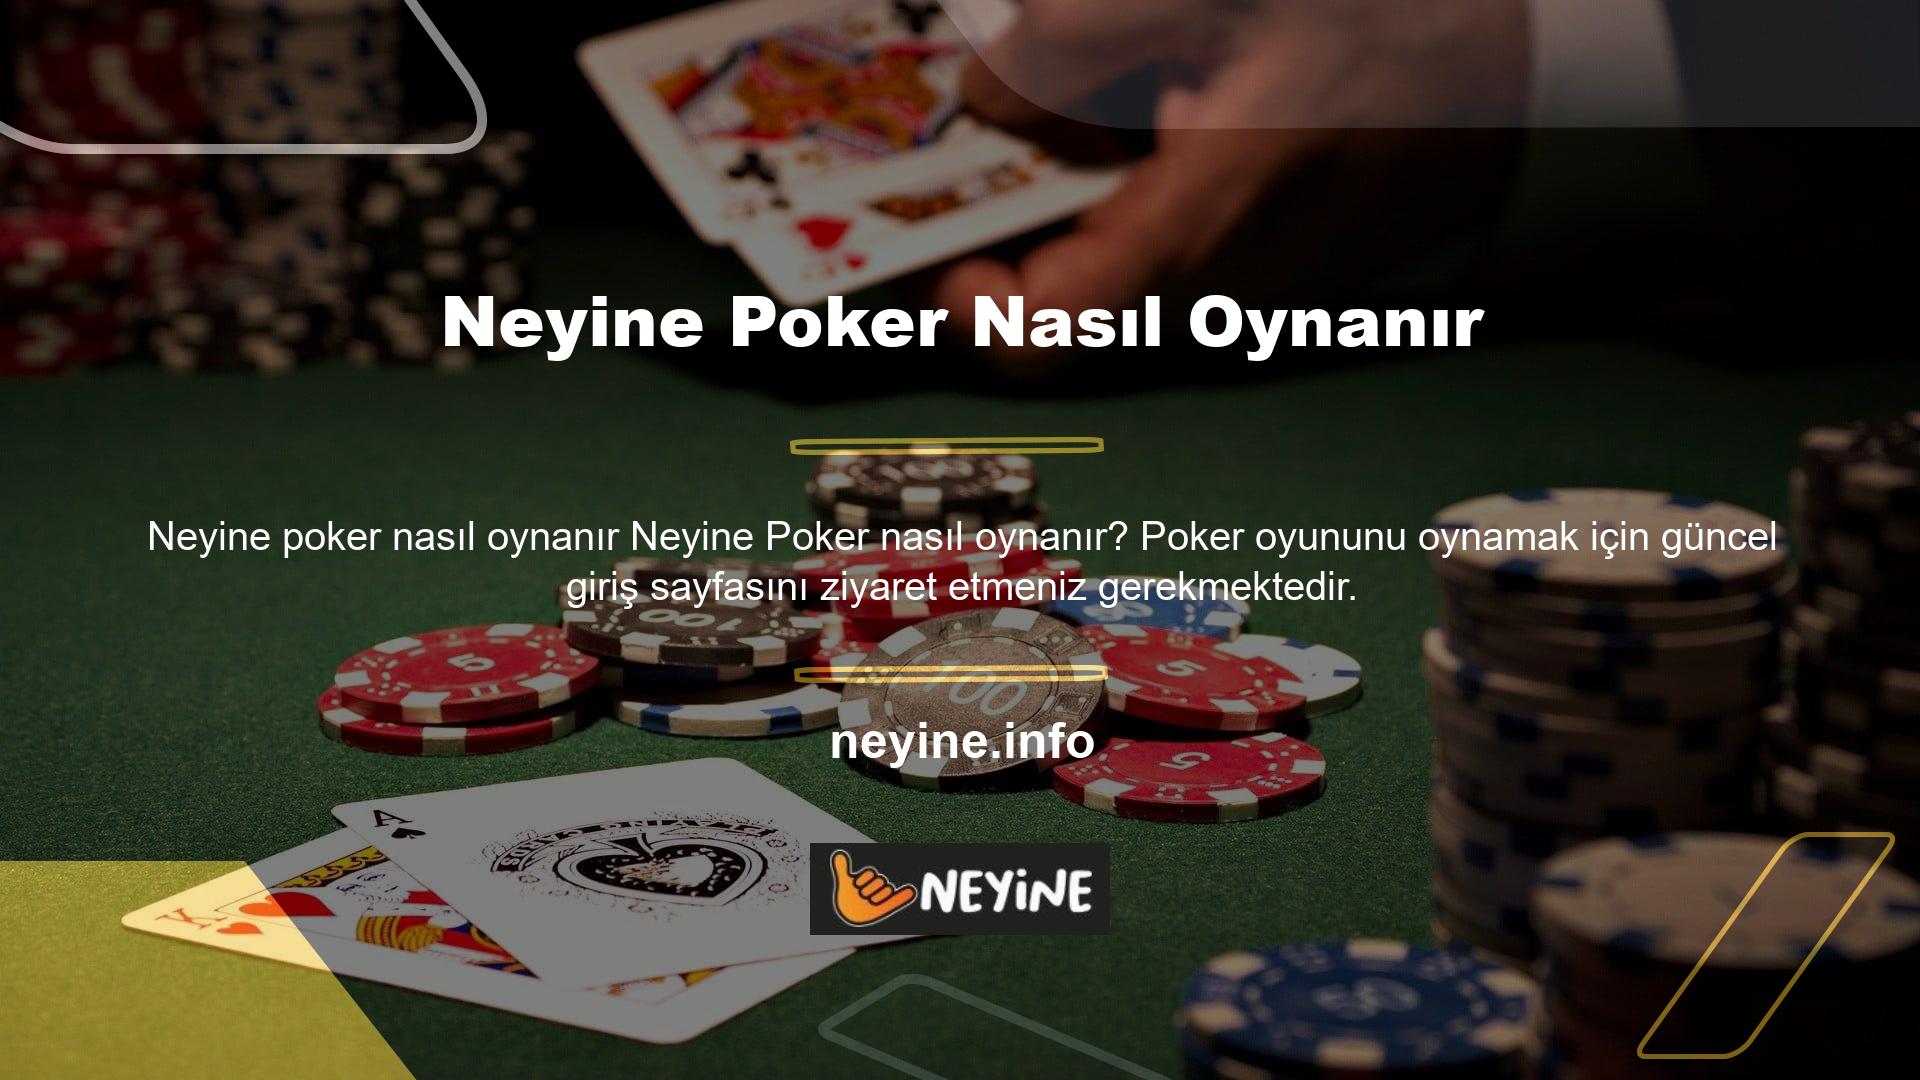 Casino sitelerinden biri olarak kabul edilen Neyine web sitesi aynı zamanda diğer çevrimiçi poker oyunlarına da erişmenizi sağlar